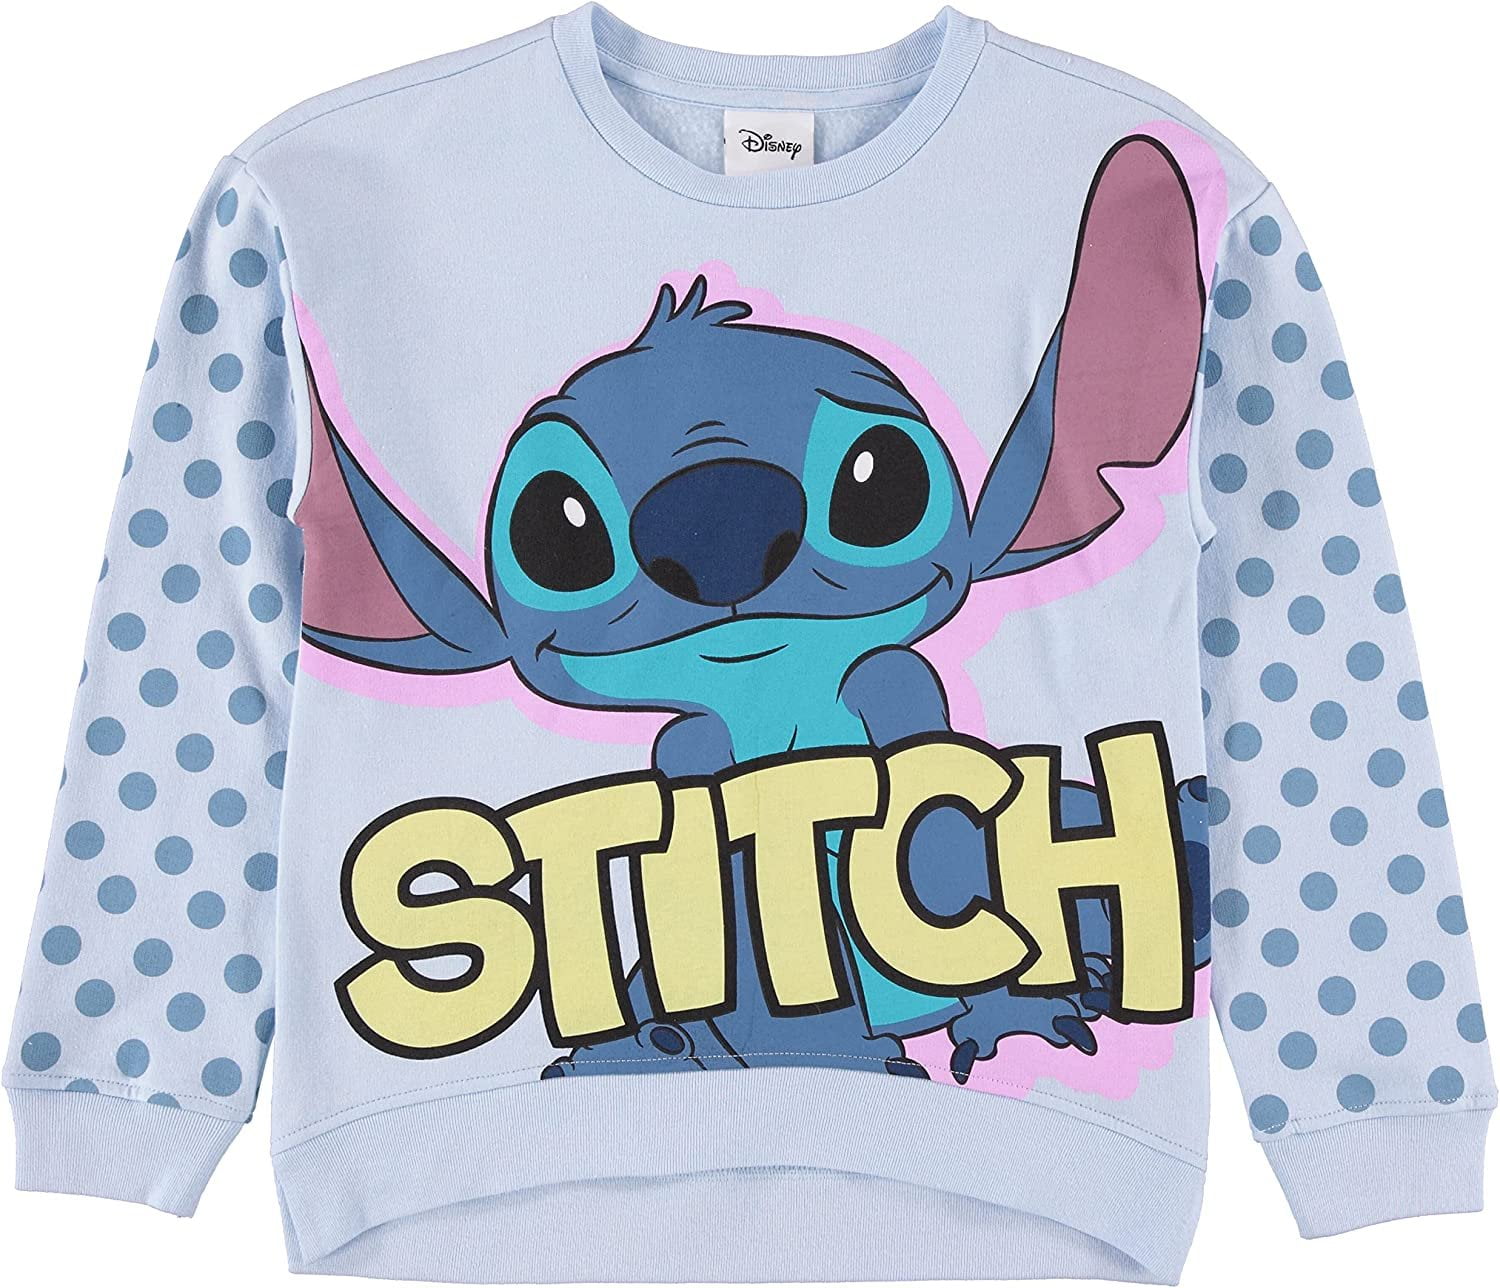 Lilo & Stitch Girls Sweatshirt -Jumbo Print and Embroidery Disney's Stitch  Sweater- Sizes 4-16 